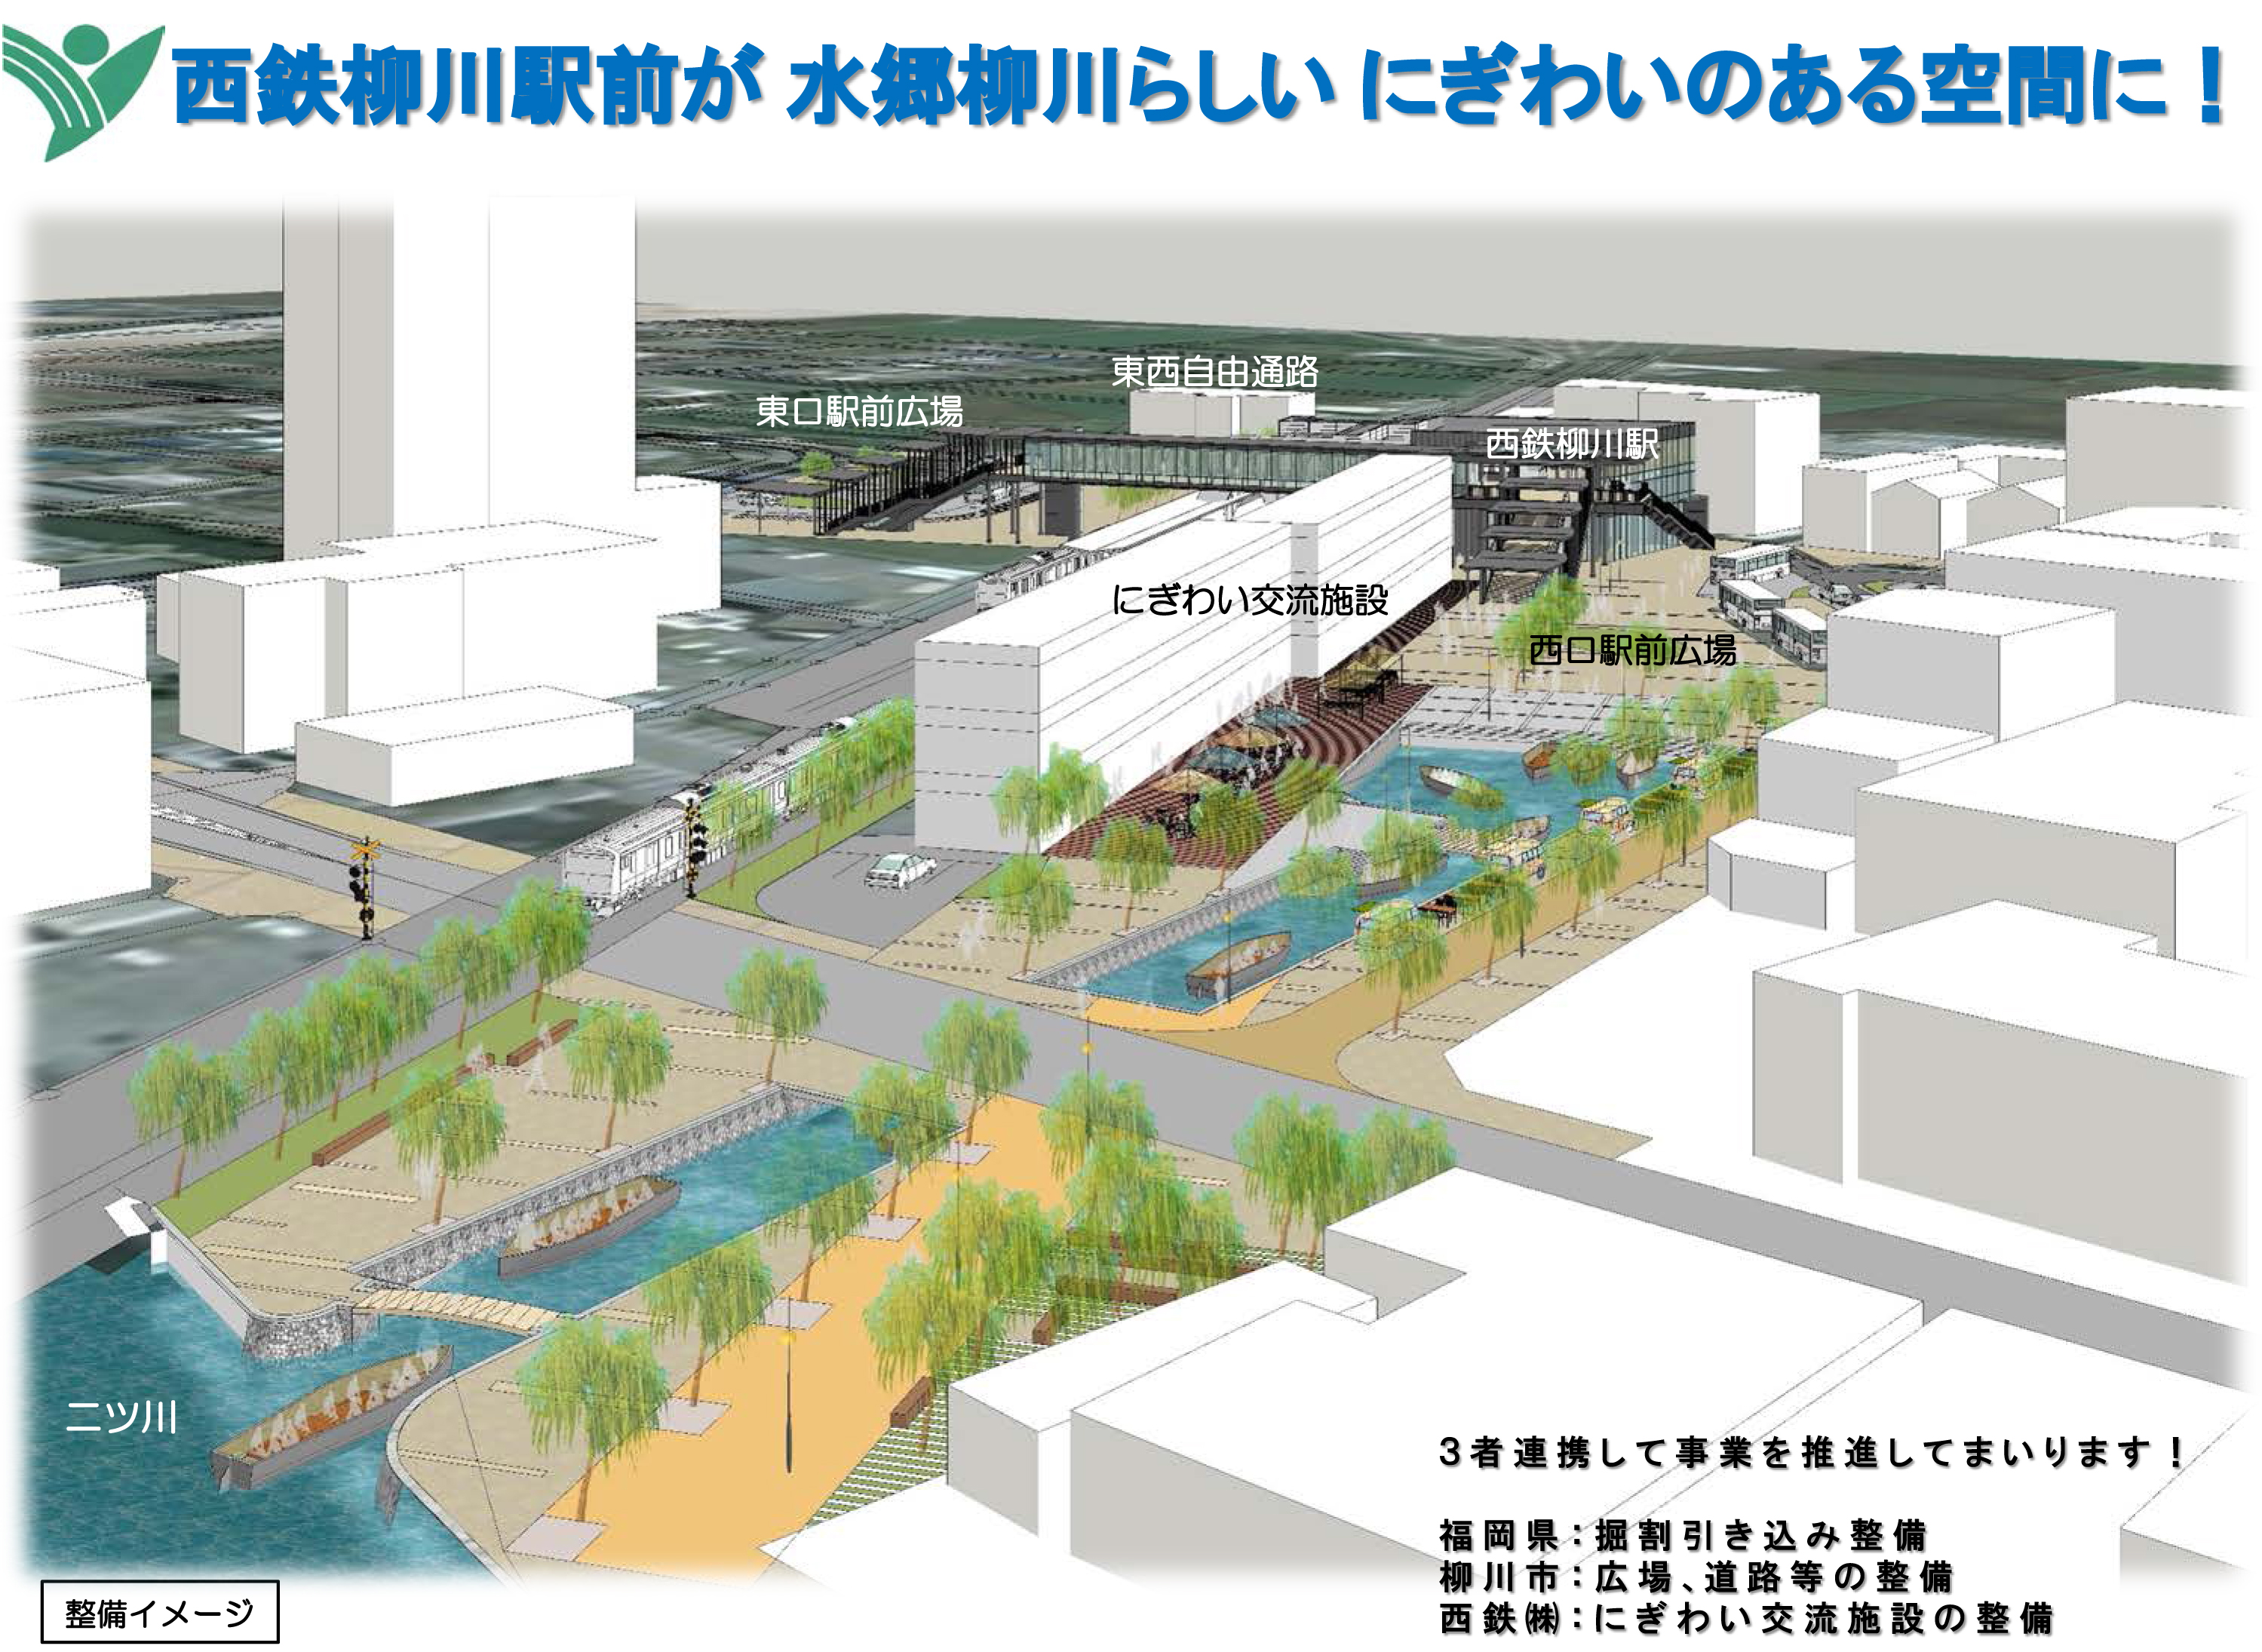 西鉄柳川駅周辺のイメージ図